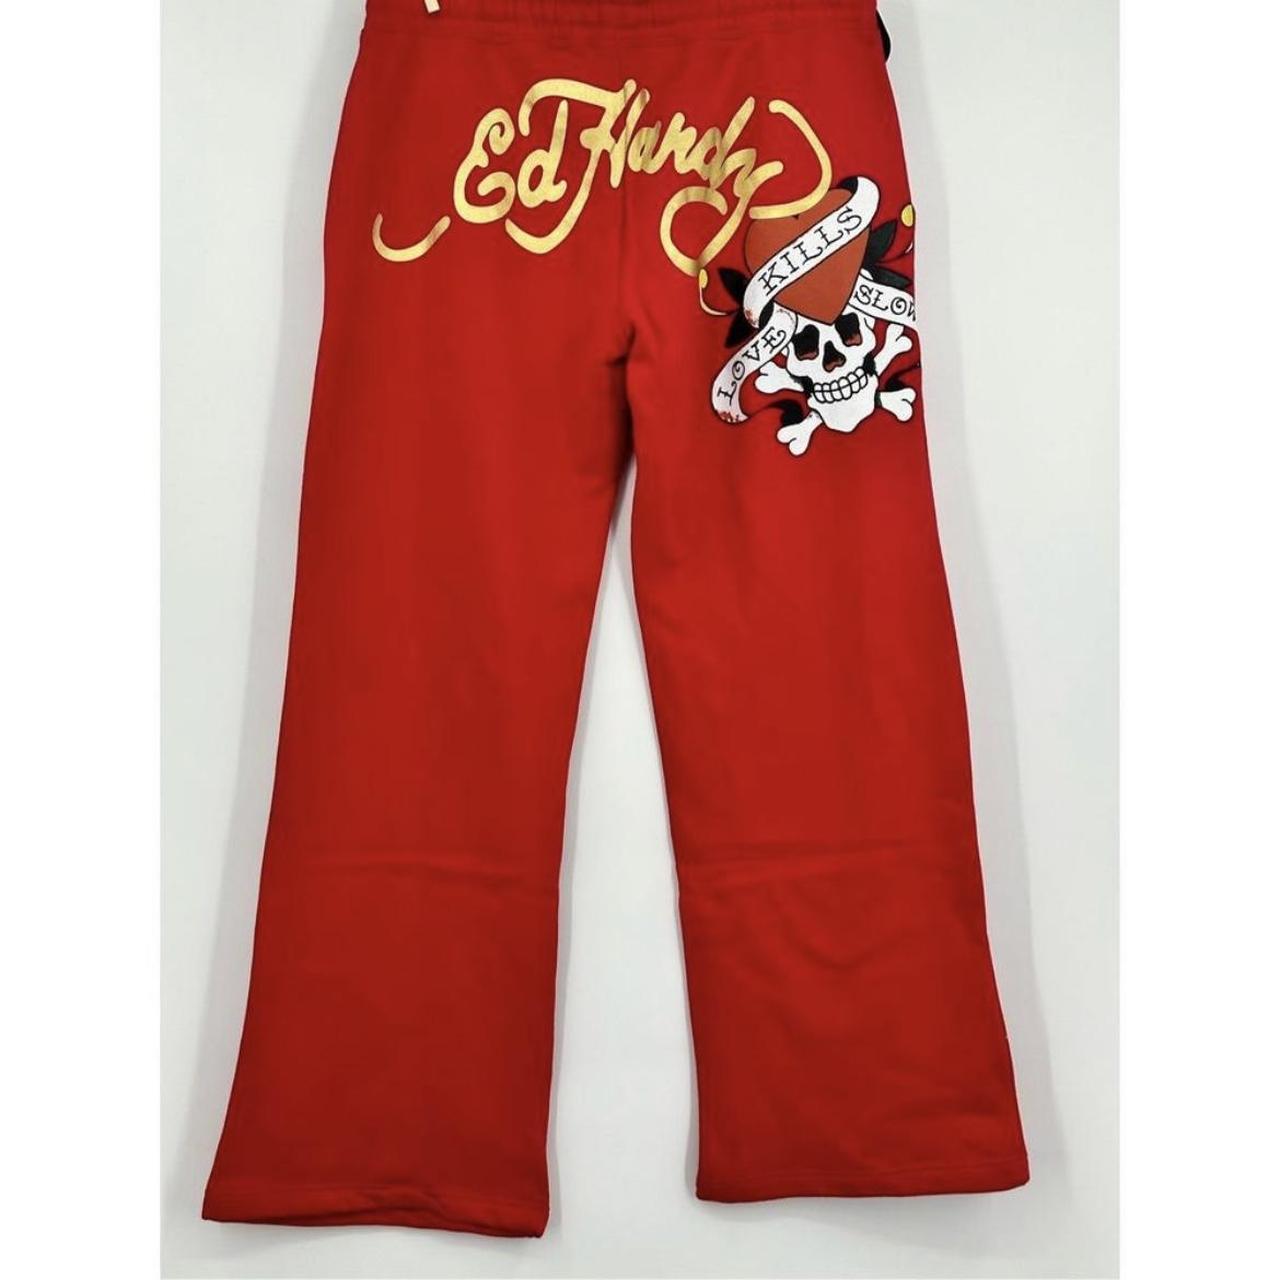 Ed hardy red sweatpants Women Never worn - Depop